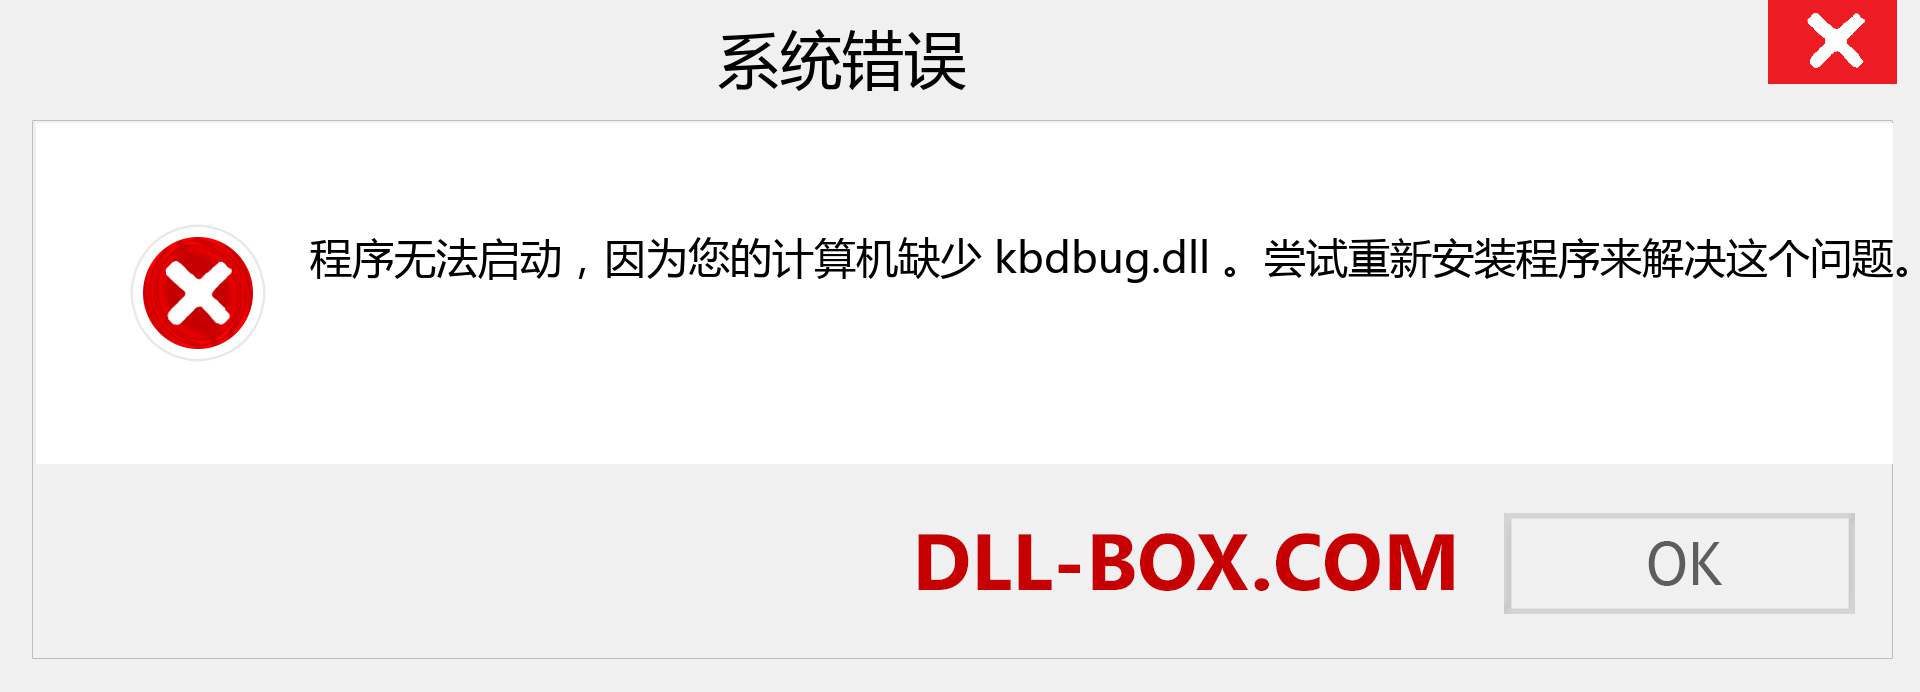 kbdbug.dll 文件丢失？。 适用于 Windows 7、8、10 的下载 - 修复 Windows、照片、图像上的 kbdbug dll 丢失错误